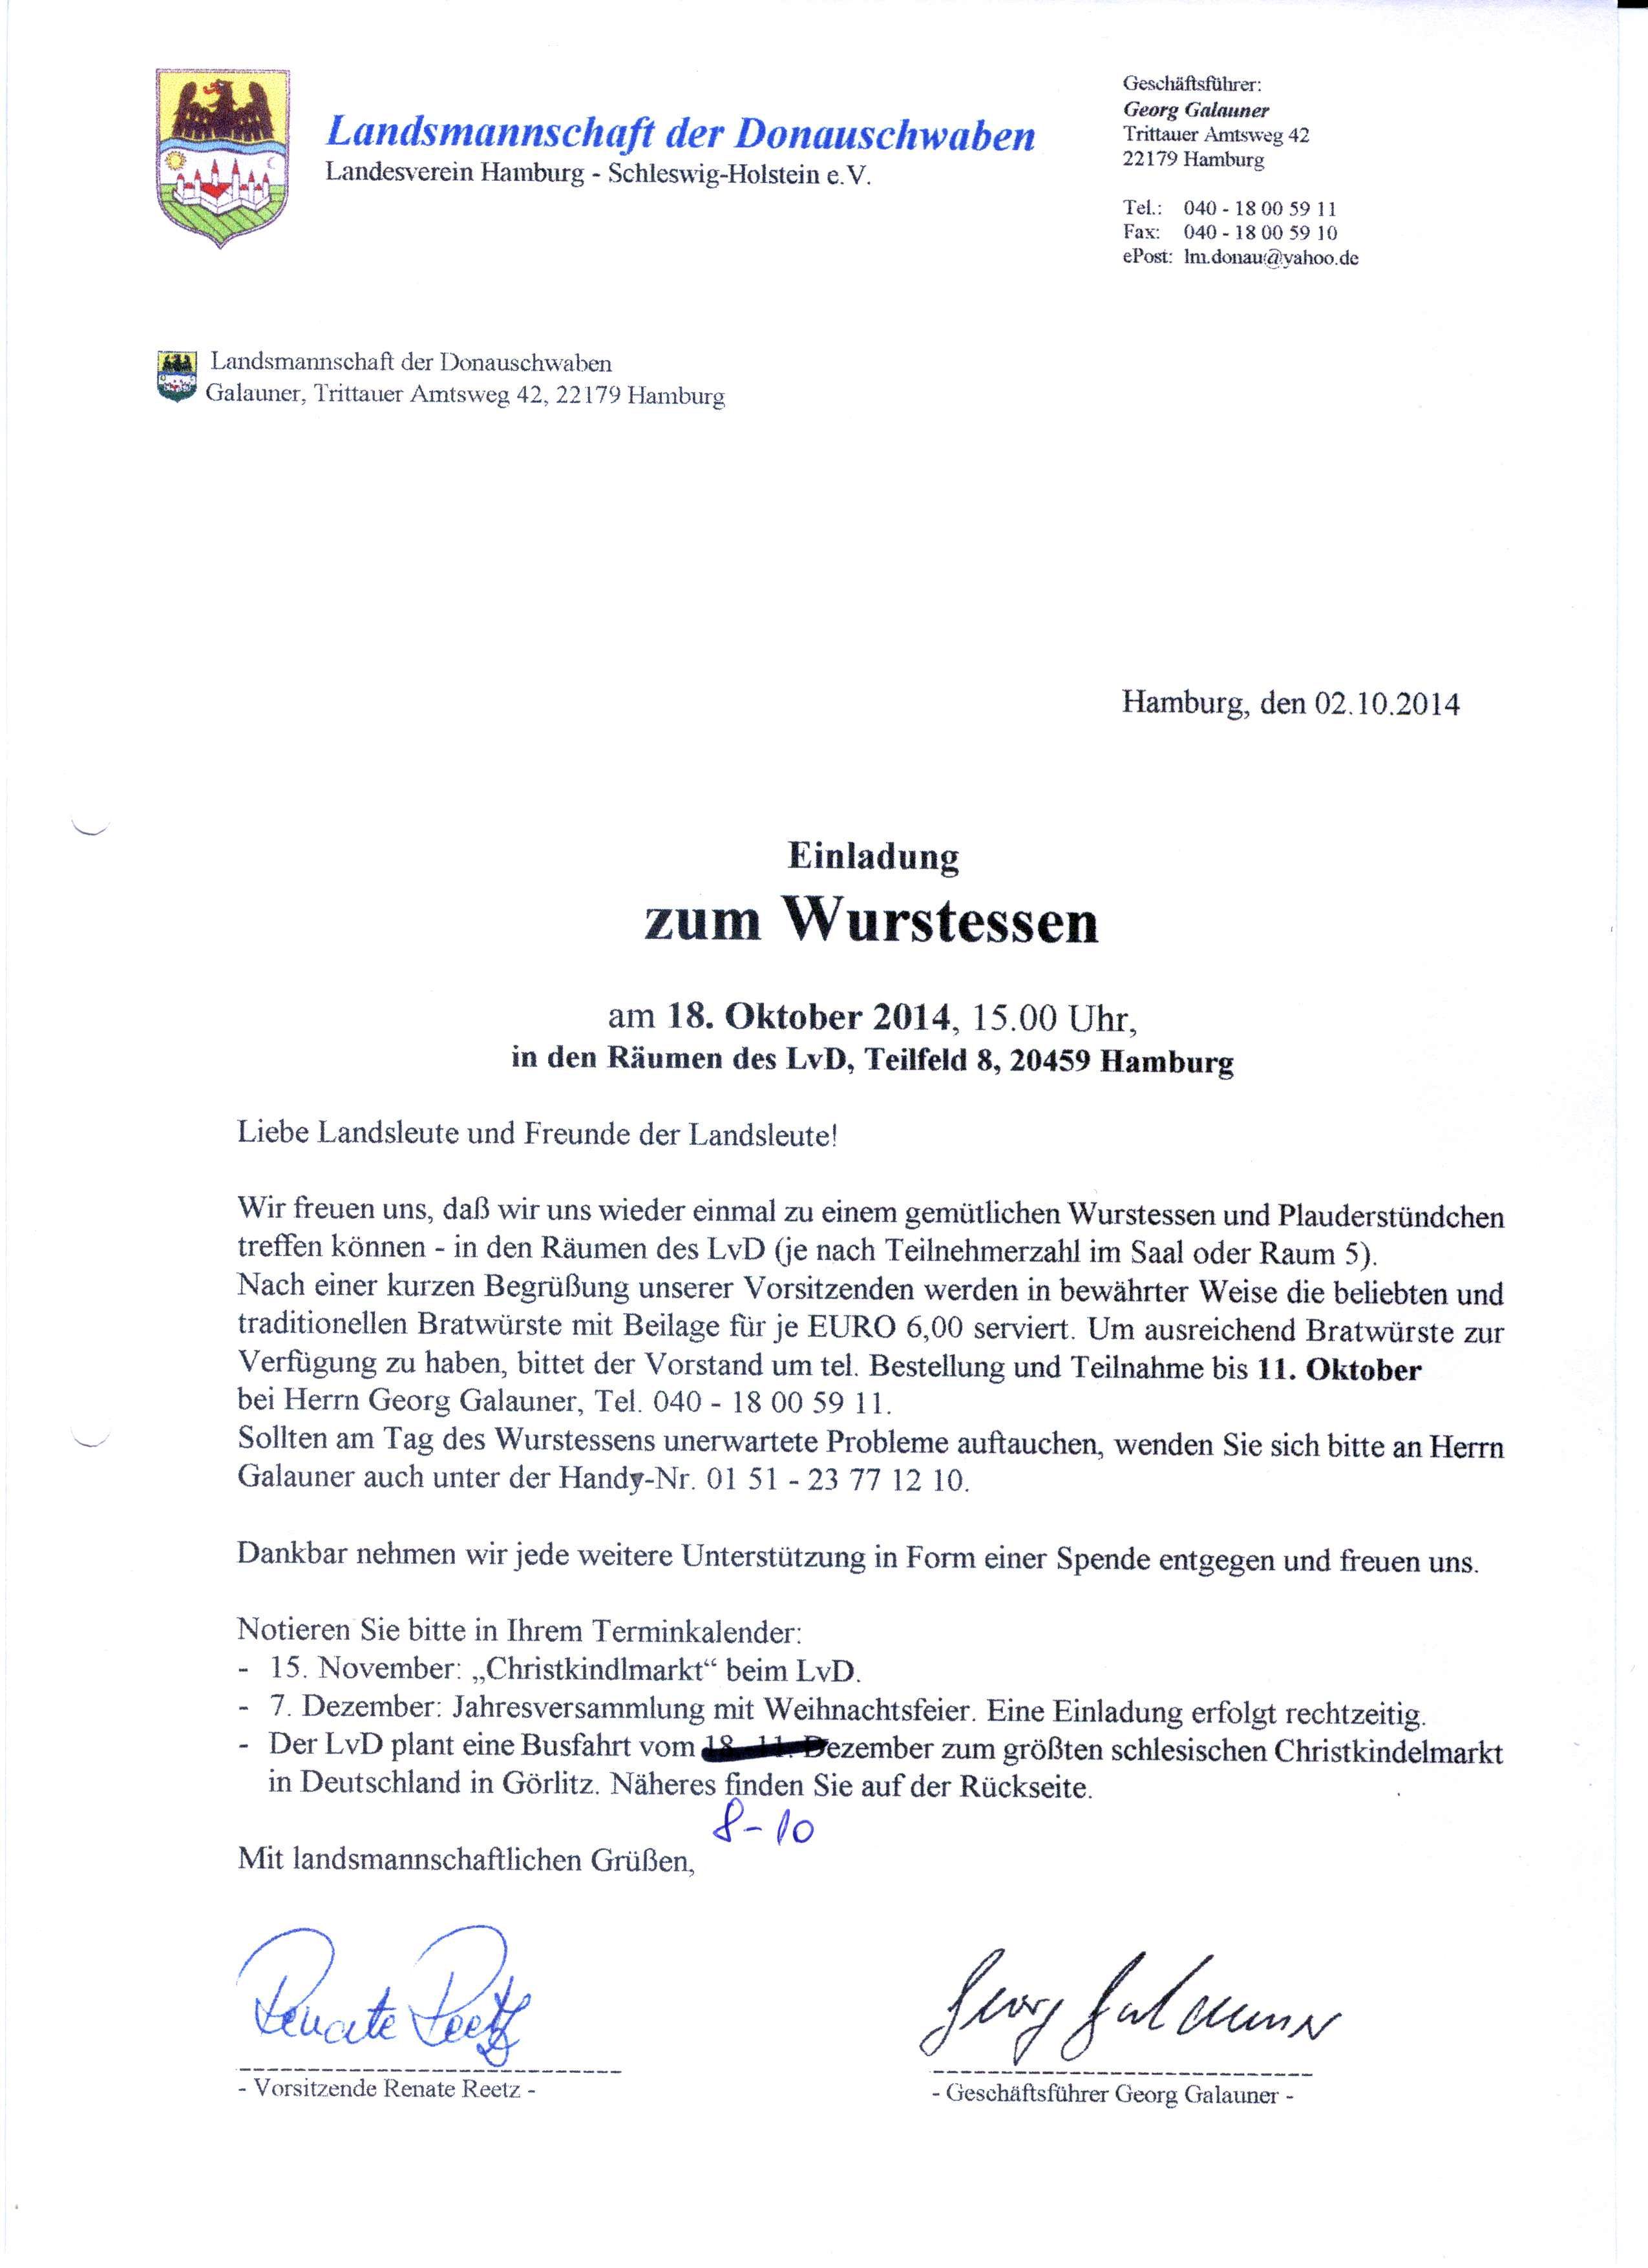 Einladung Wurstessen 2014